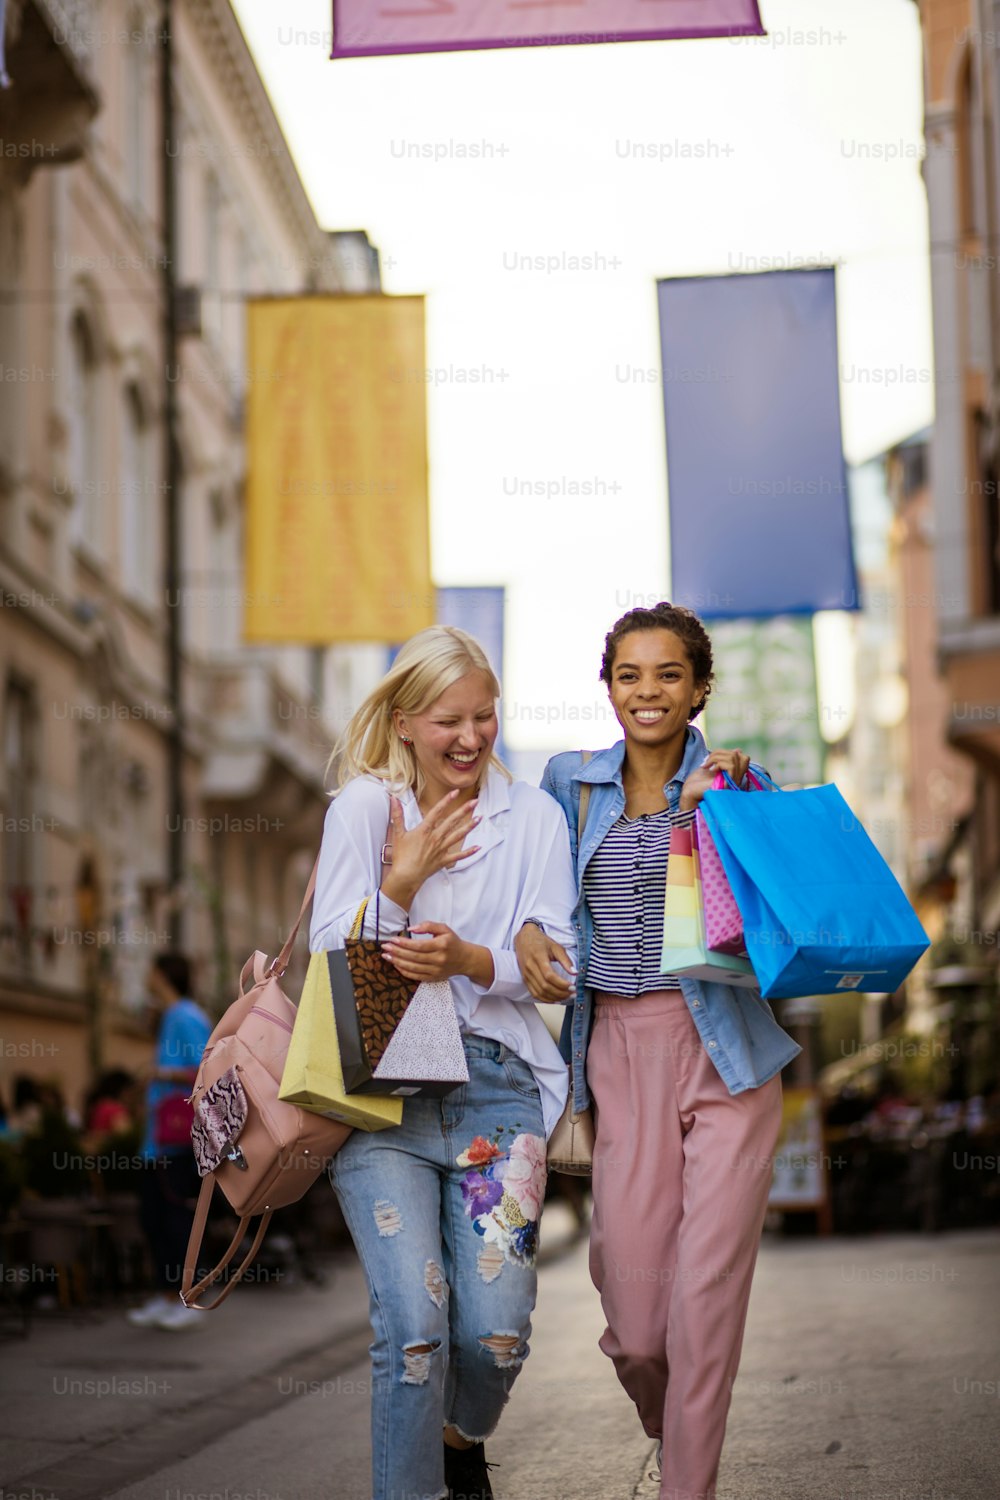 Duas mulheres na rua carregando sacolas de compras.